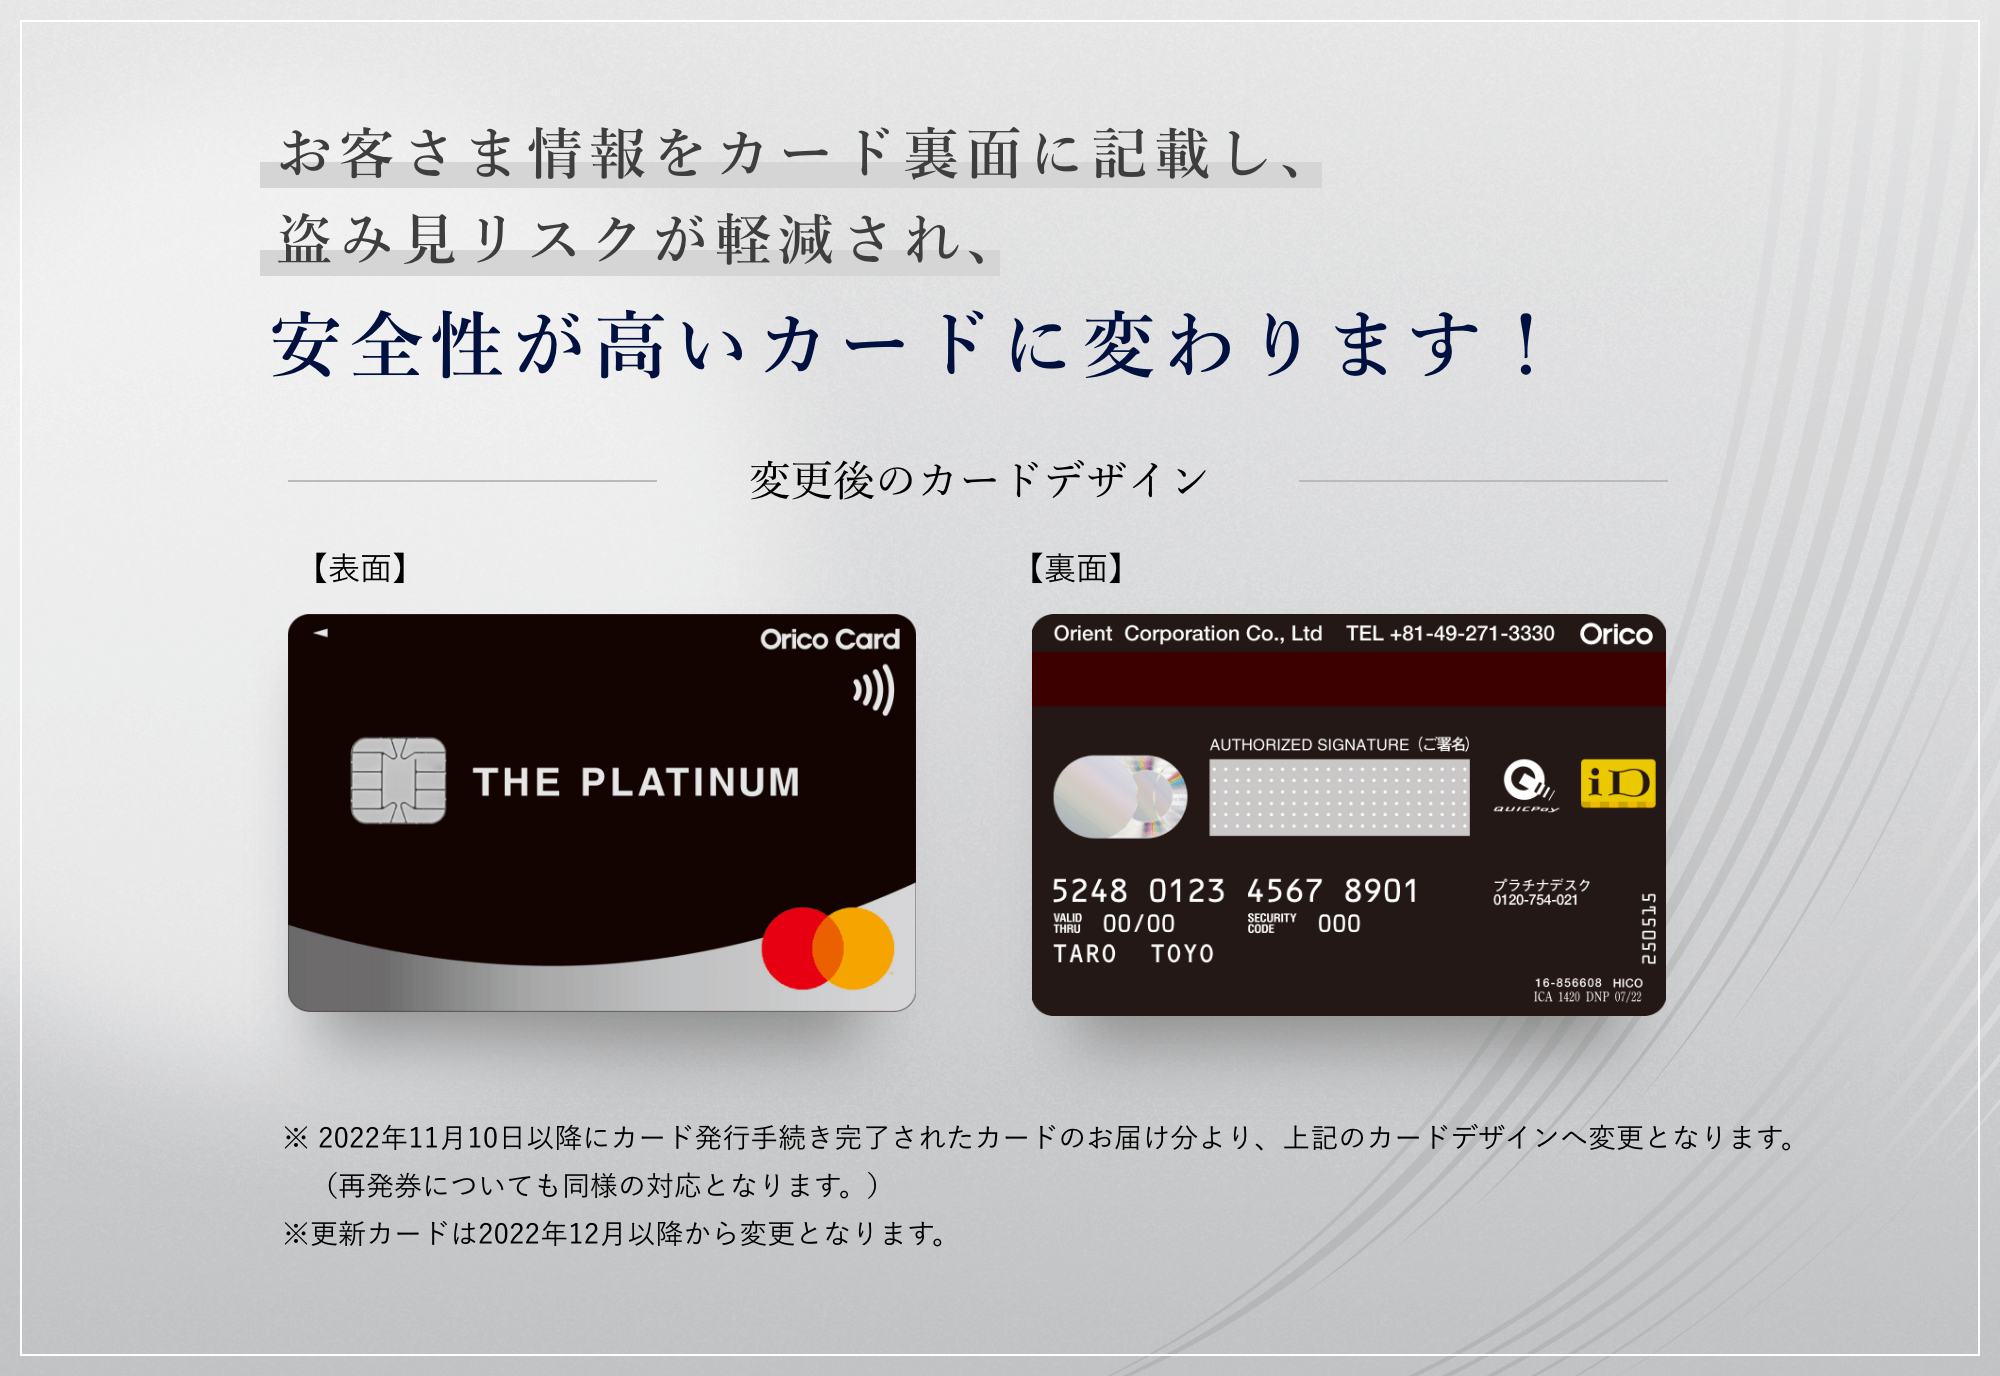 お客さま情報をカード裏面に記載し、盗み見リスクが軽減され、安全性が高いカードに変わります！